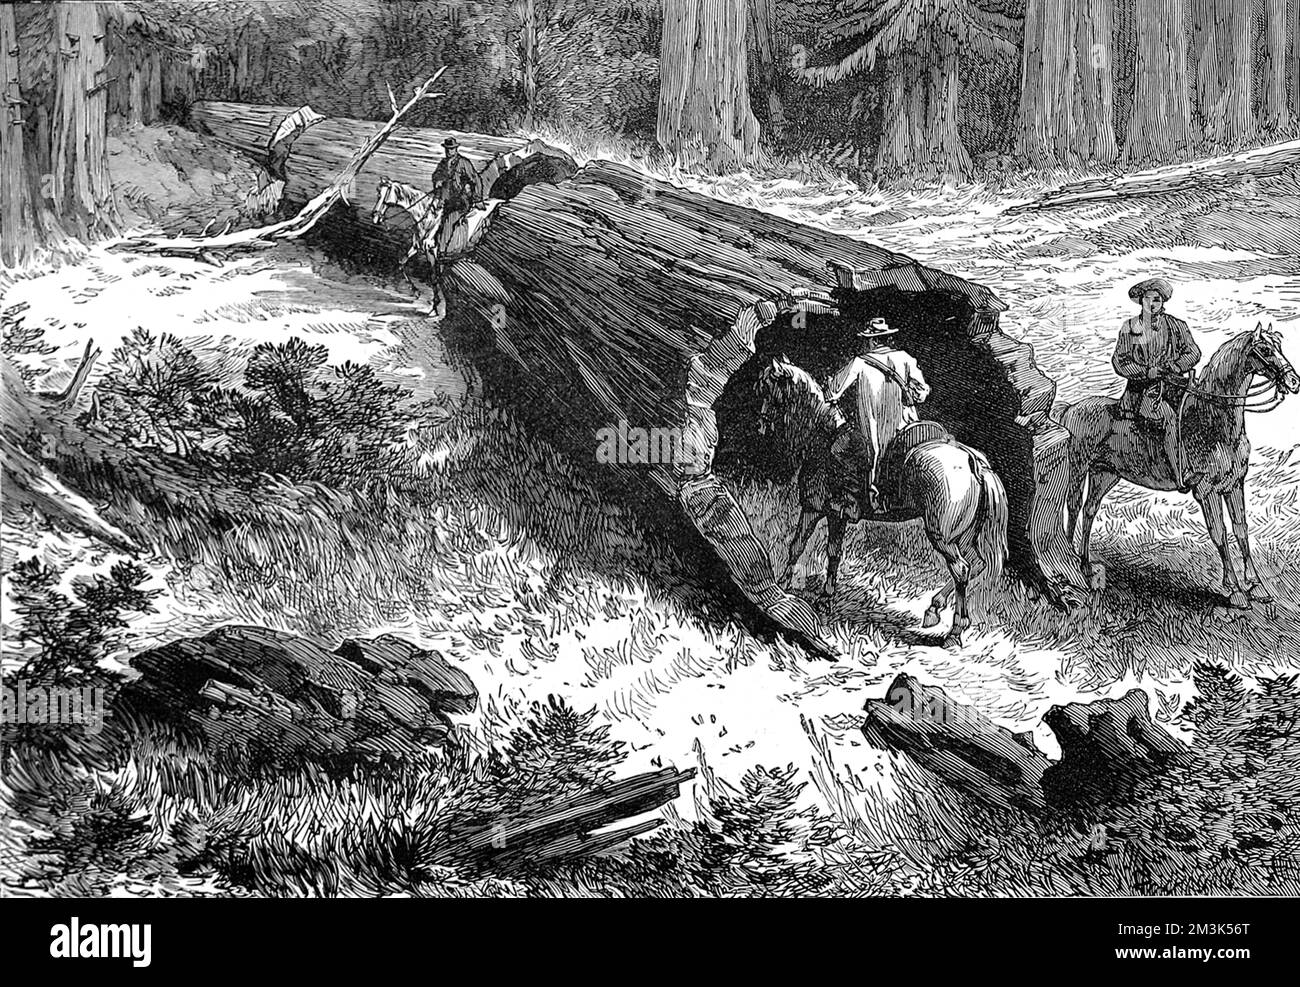 Drei Männer auf dem Pferderücken neben einem gefallenen riesigen Mammutbaum, Kalifornien, 1877. Dieser spezielle Baum, so scheint es, war hohl genug, um auf dem Pferderücken durch einen Mann zu reiten. 1877 Stockfoto